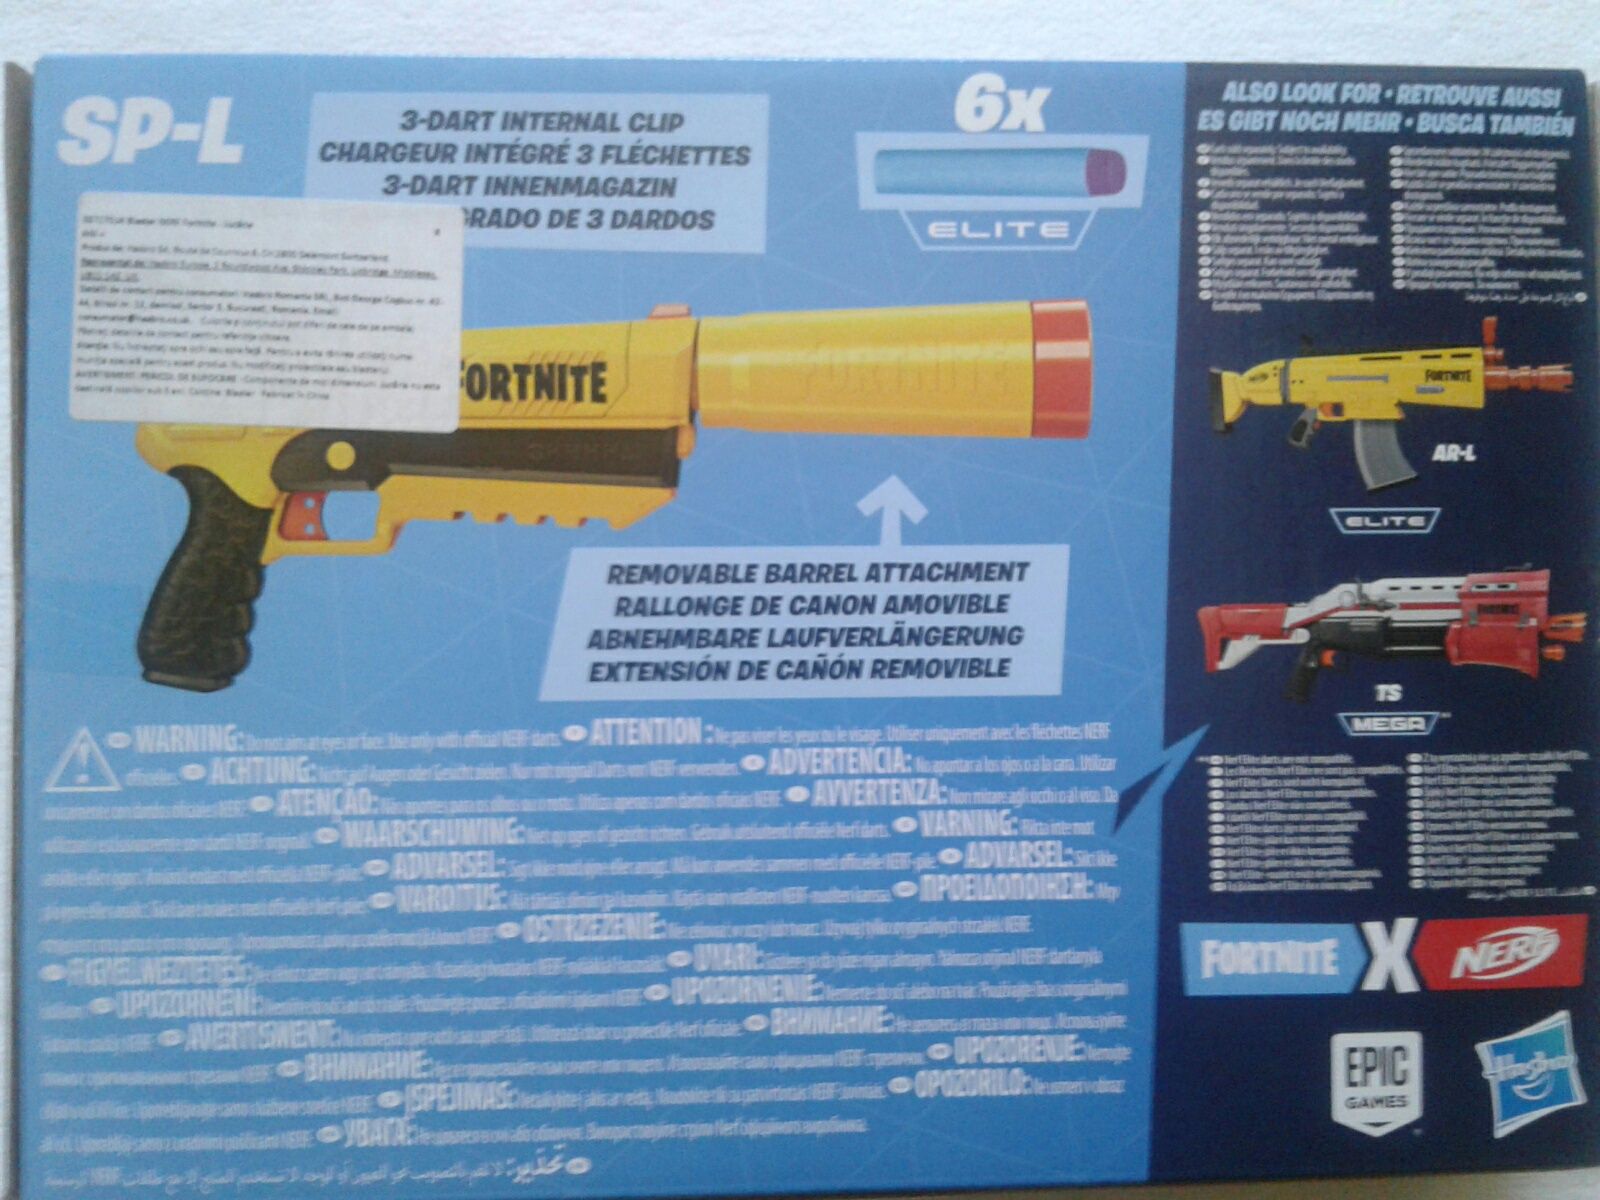 Pistol jucarie cu prelungitor Nerf Fortnite SP-L, E6717, nou